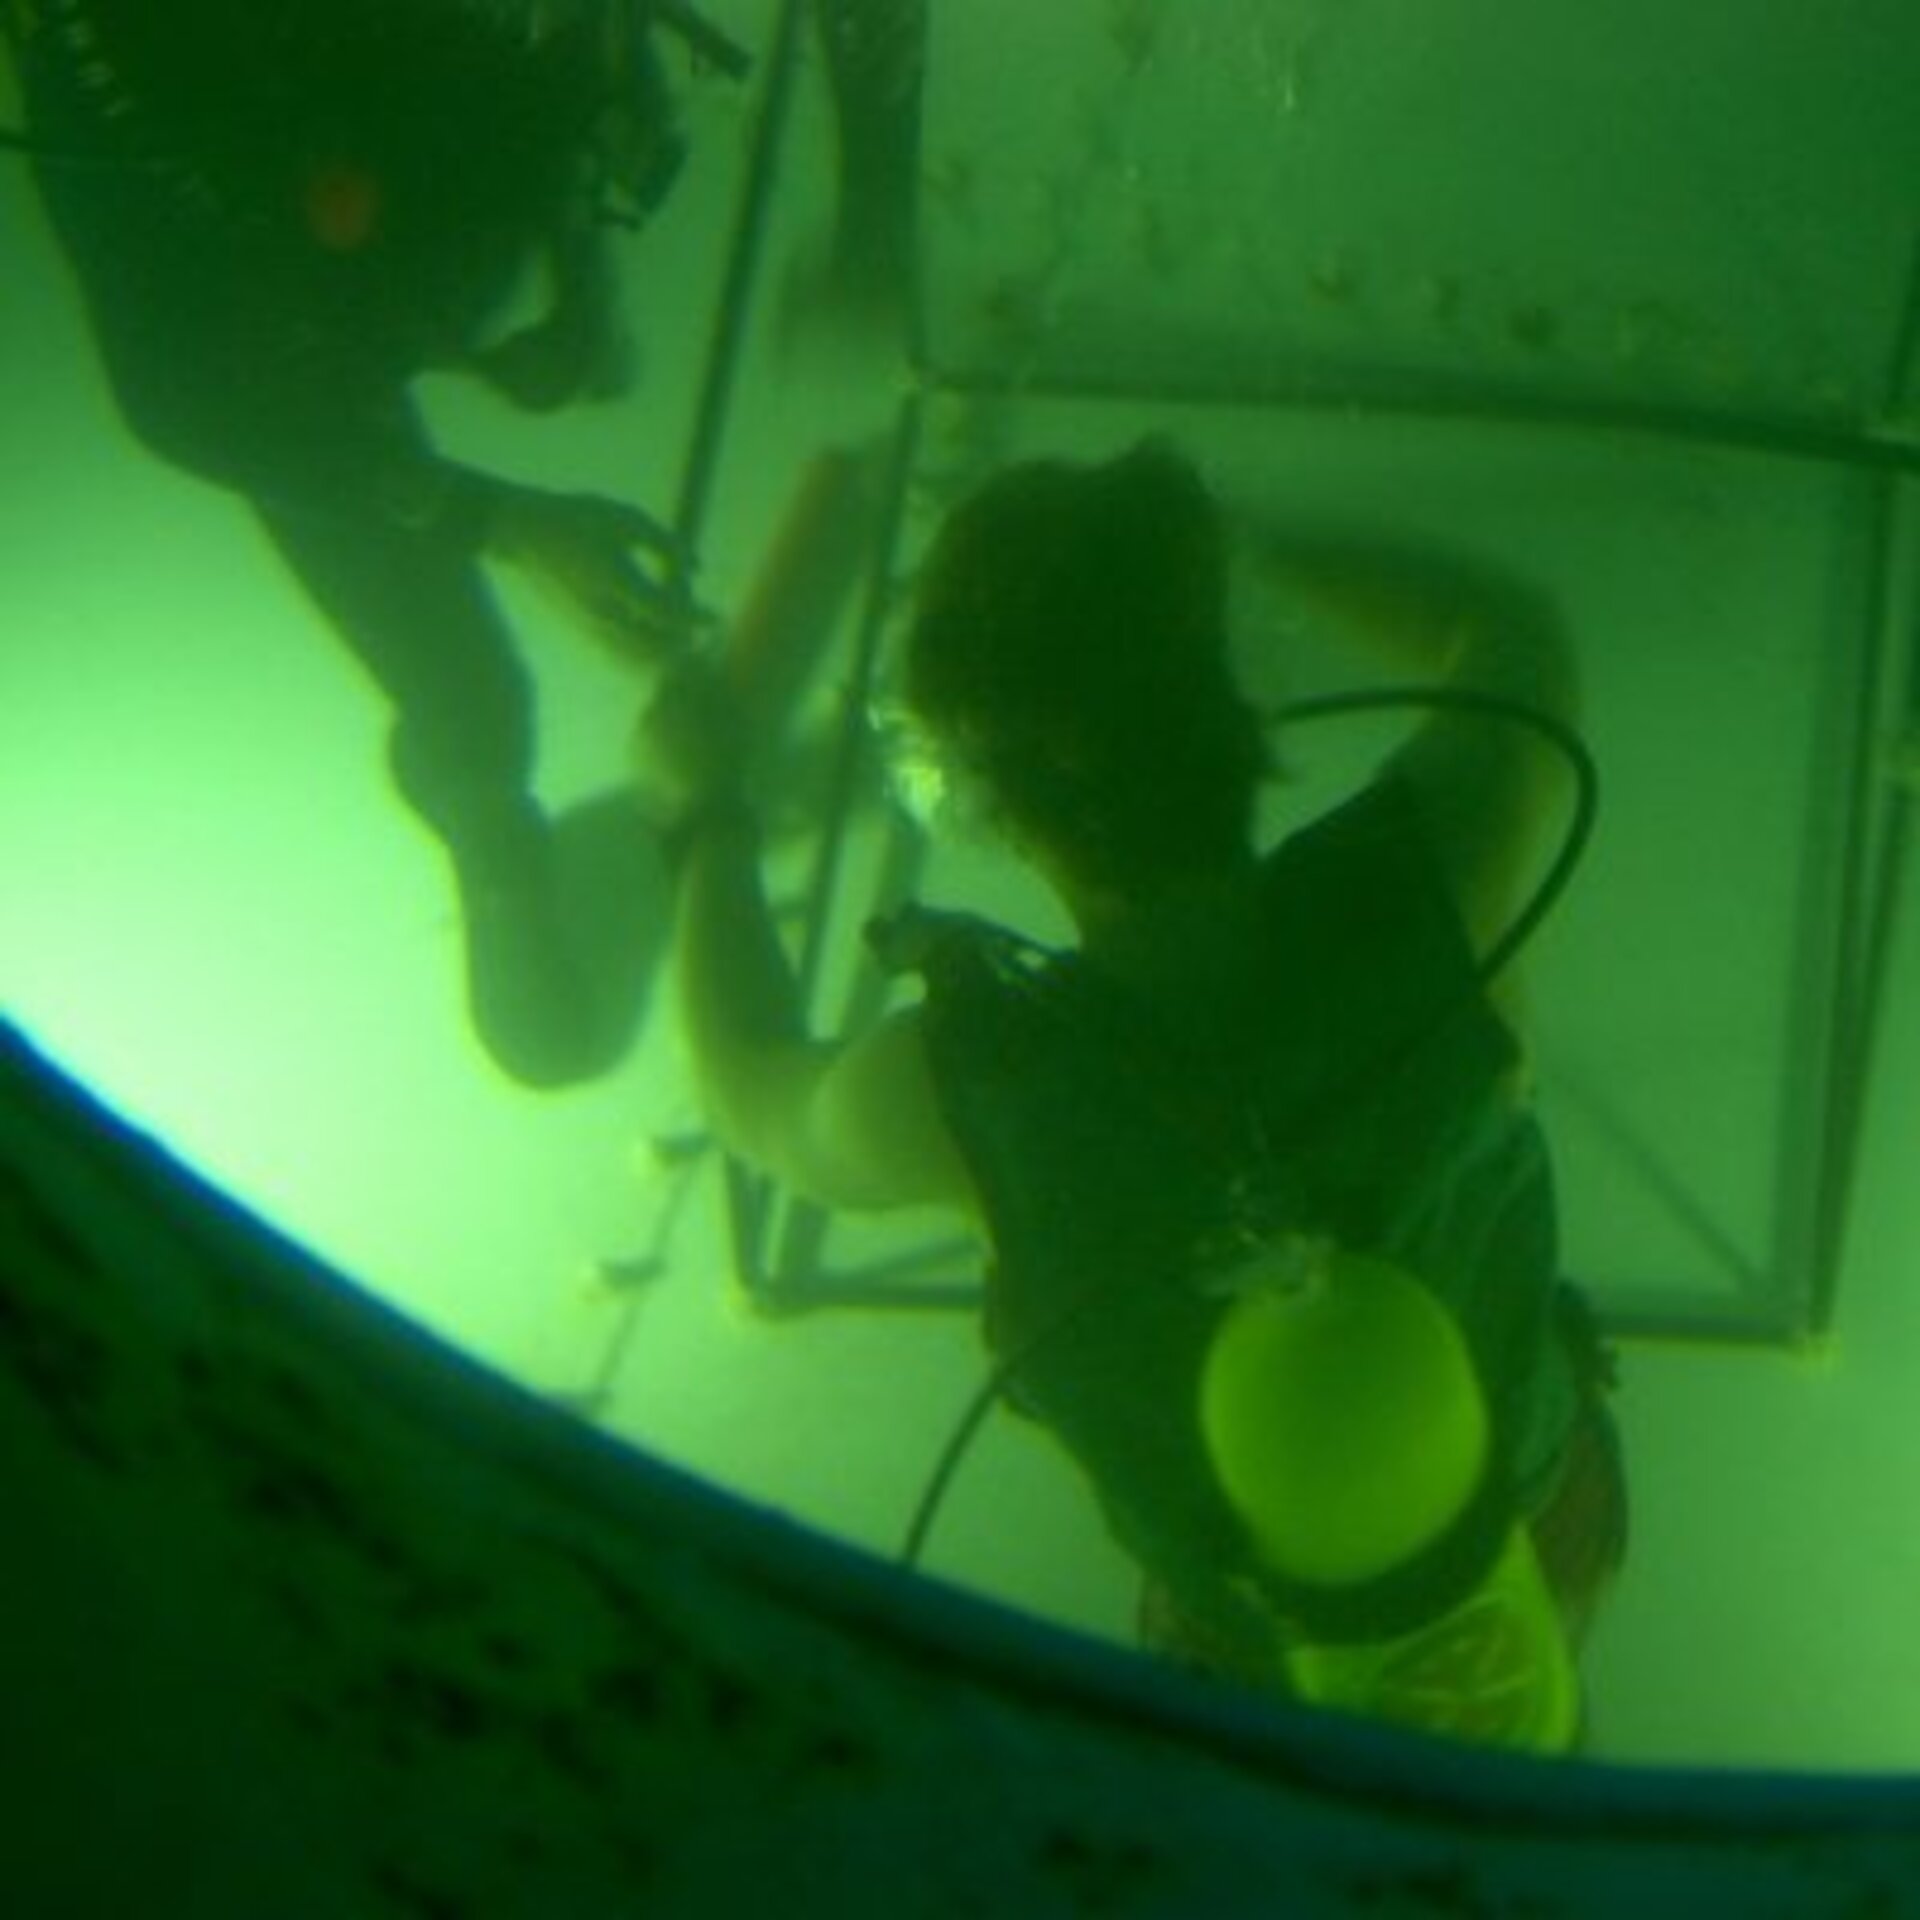 Zoals echte astronauten: trainen onder water